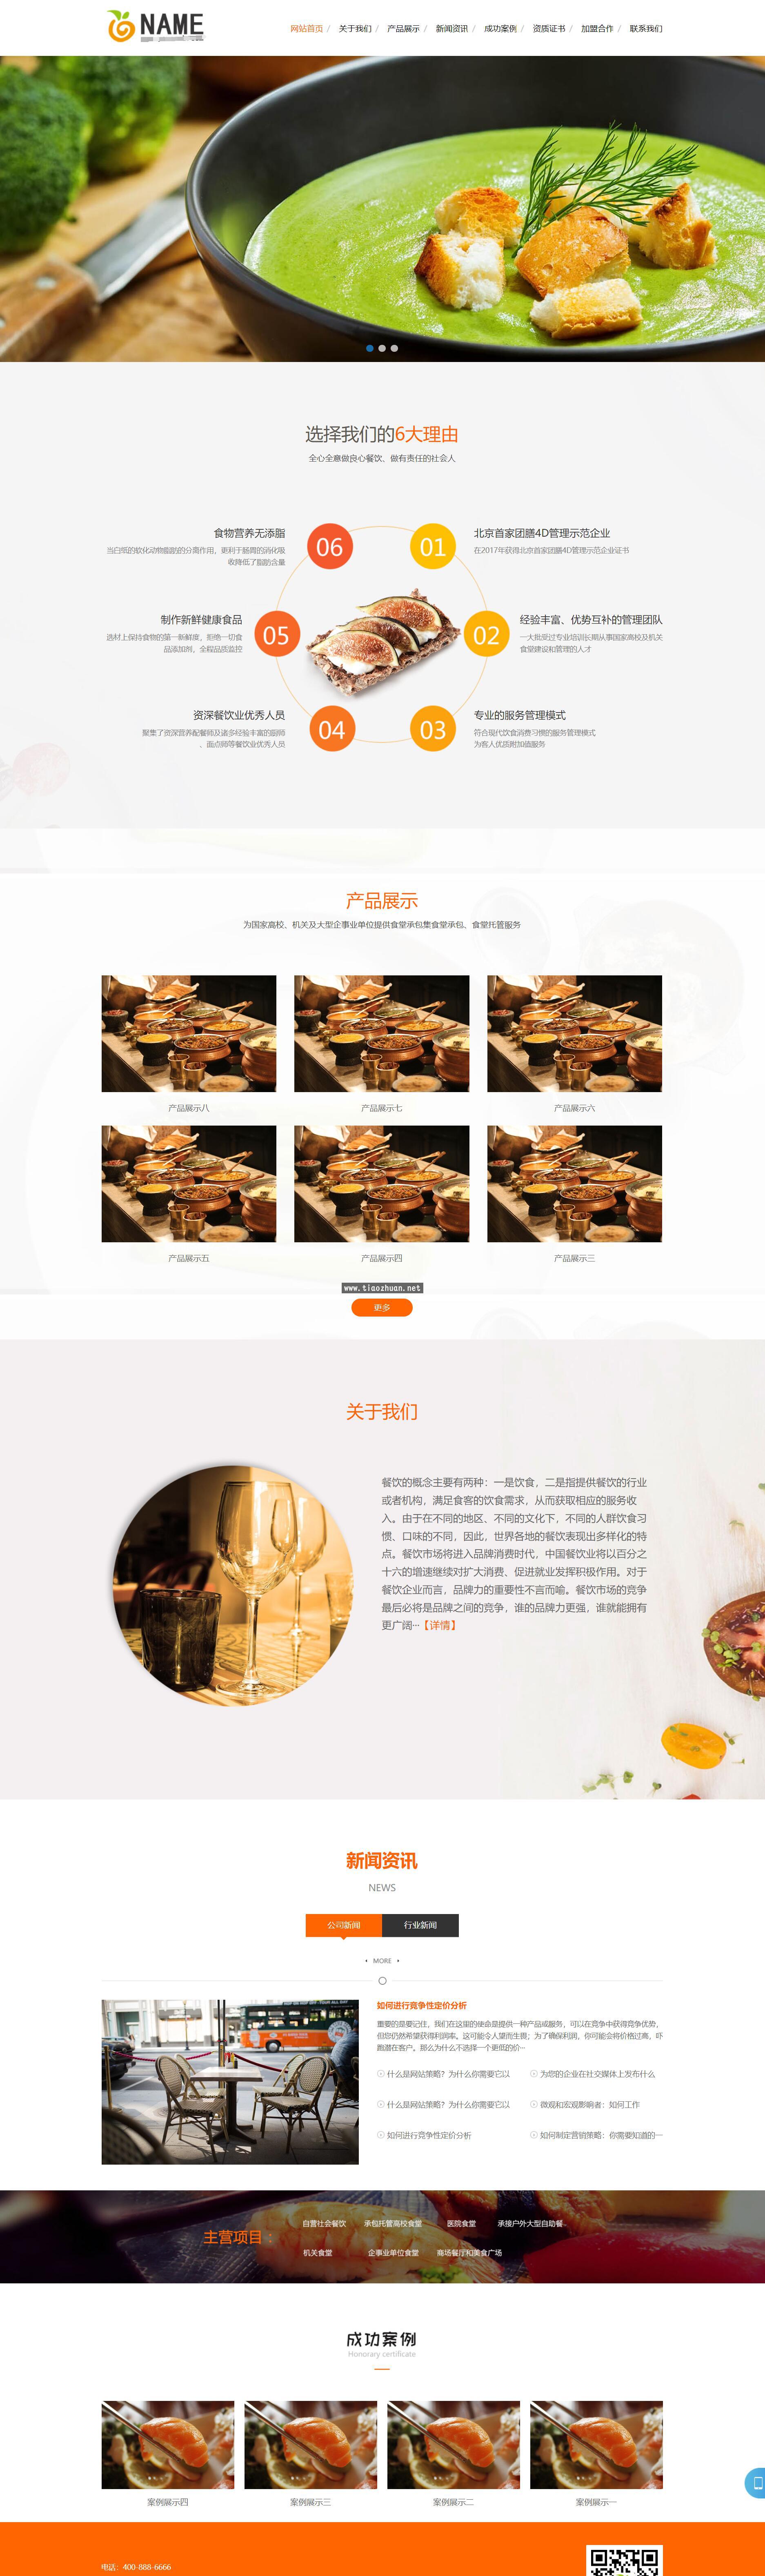 食堂餐饮档口pbootcms网站模板 快餐餐饮服务公司类网站源码下载